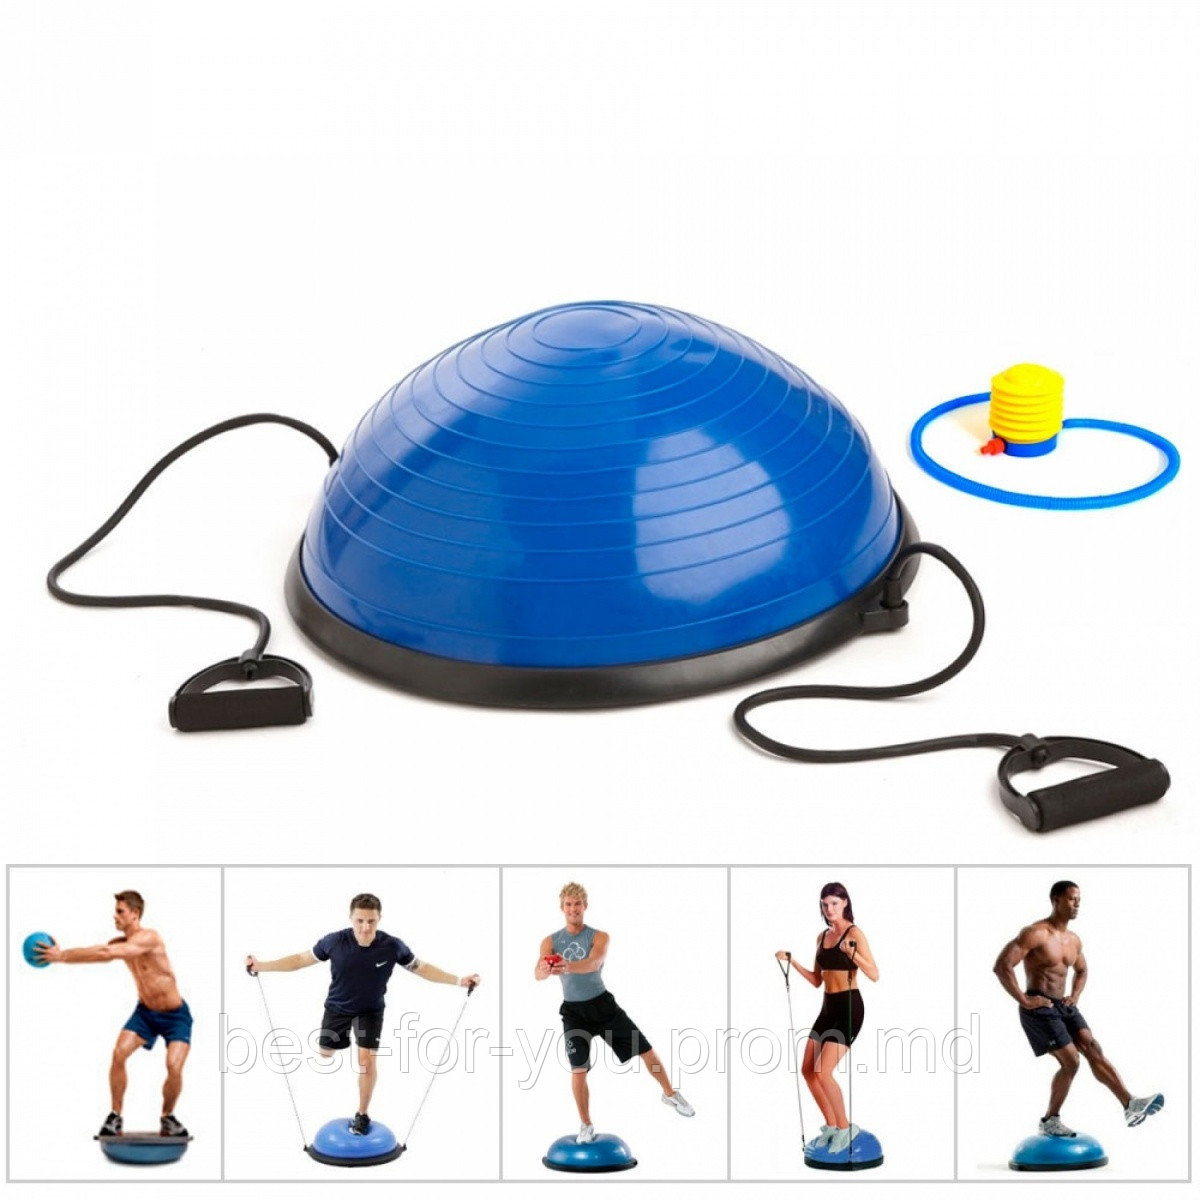 Балансировочная подушка полусфера (платформа) для фитнеса 47см